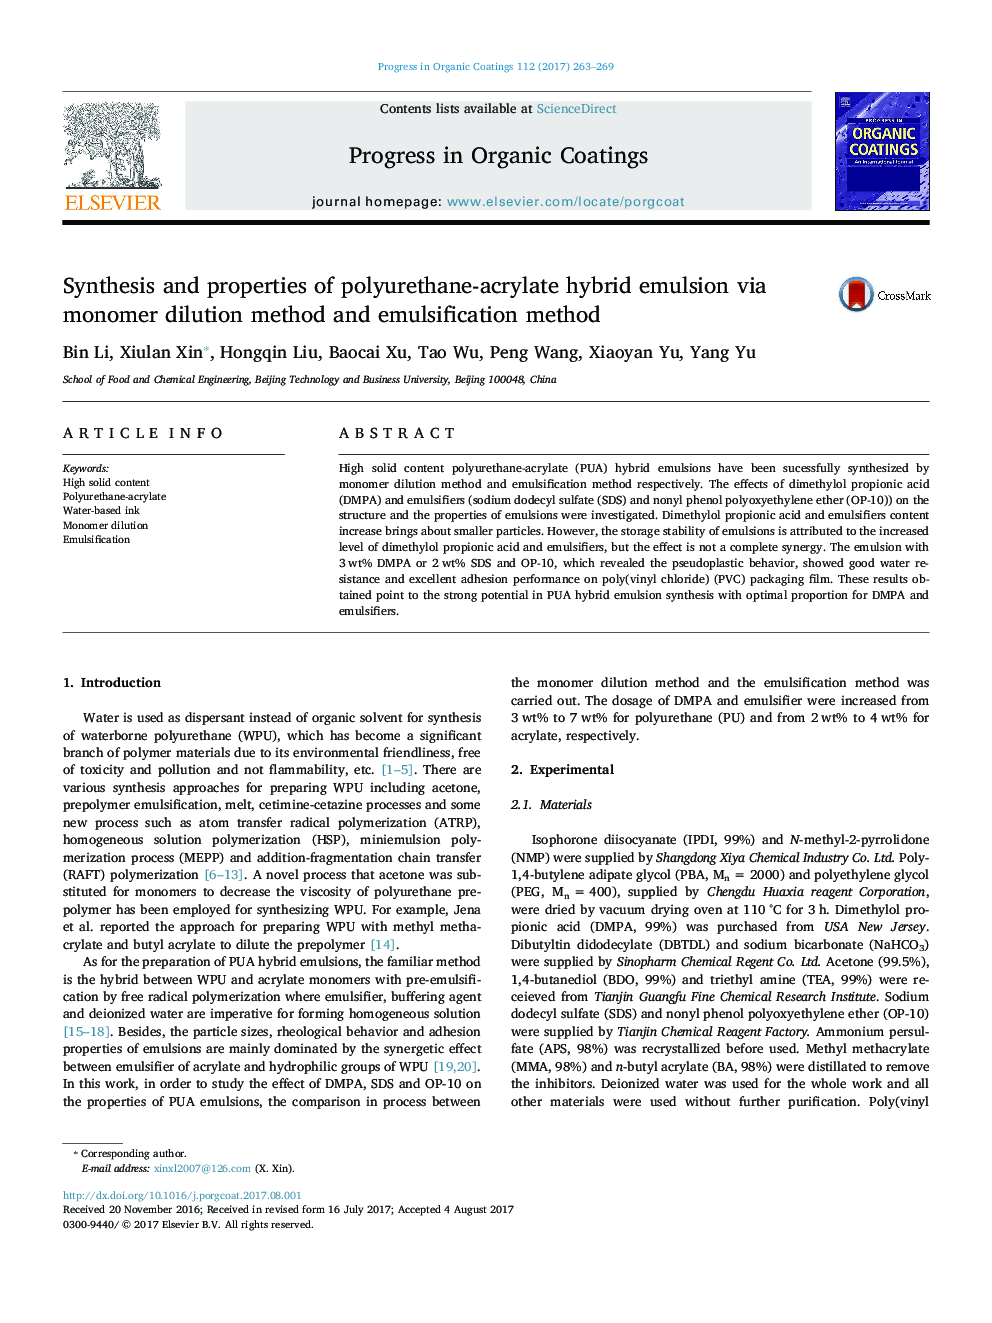 سنتز و خواص امولسیون ترکیبی پلی اورتان اکریلات با استفاده از روش رقت مونومر و روش امولسیون 